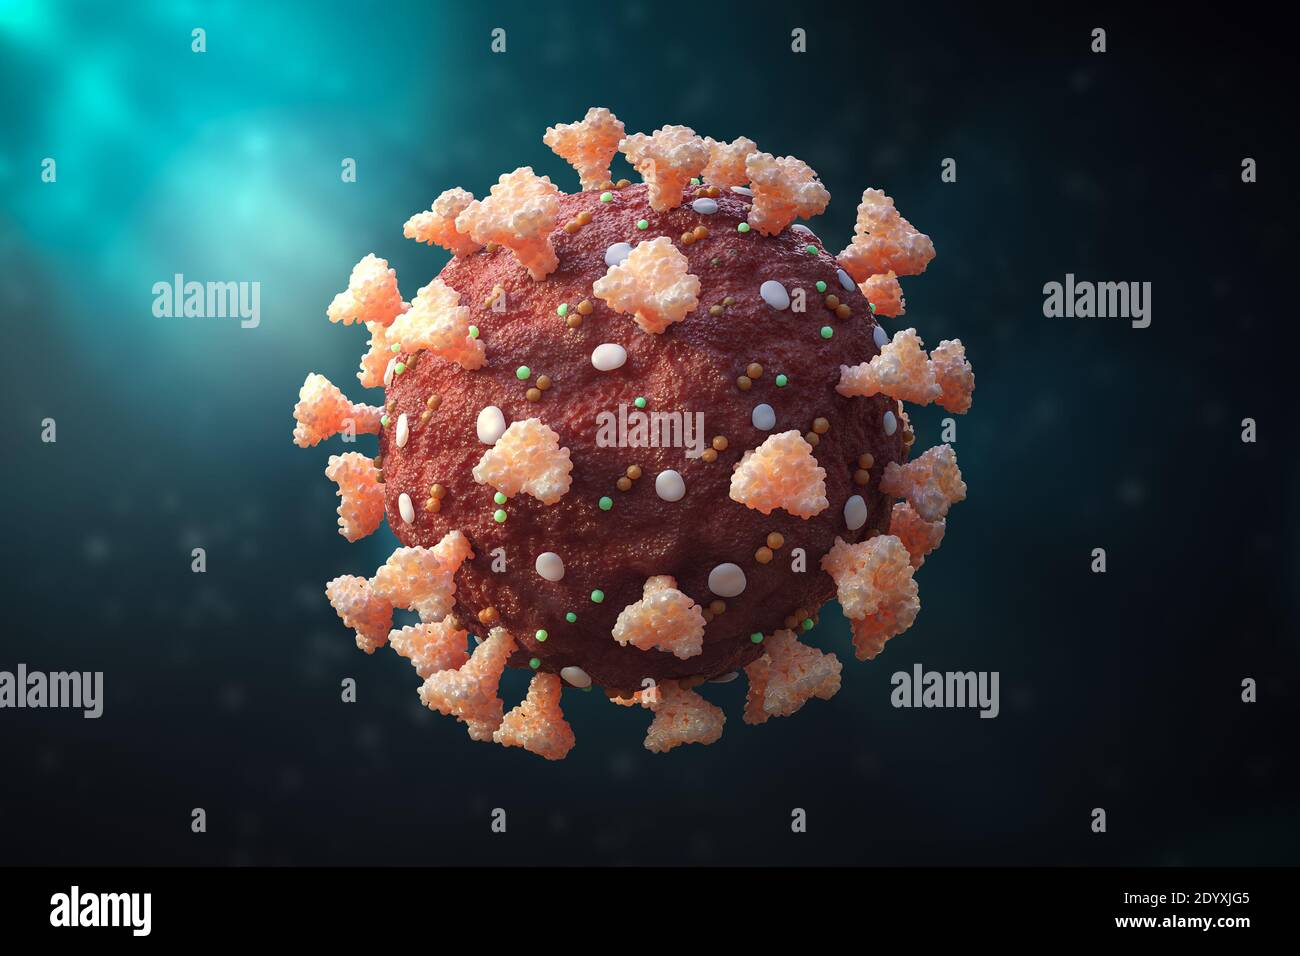 Nahaufnahme eines Coronavirus oder sars-COV-2 Zelle 3D Rendering Illustration. Genaue Anatomie des Virus. Mikrobiologie, Medizin, Wissenschaft, Virologie conce Stockfoto